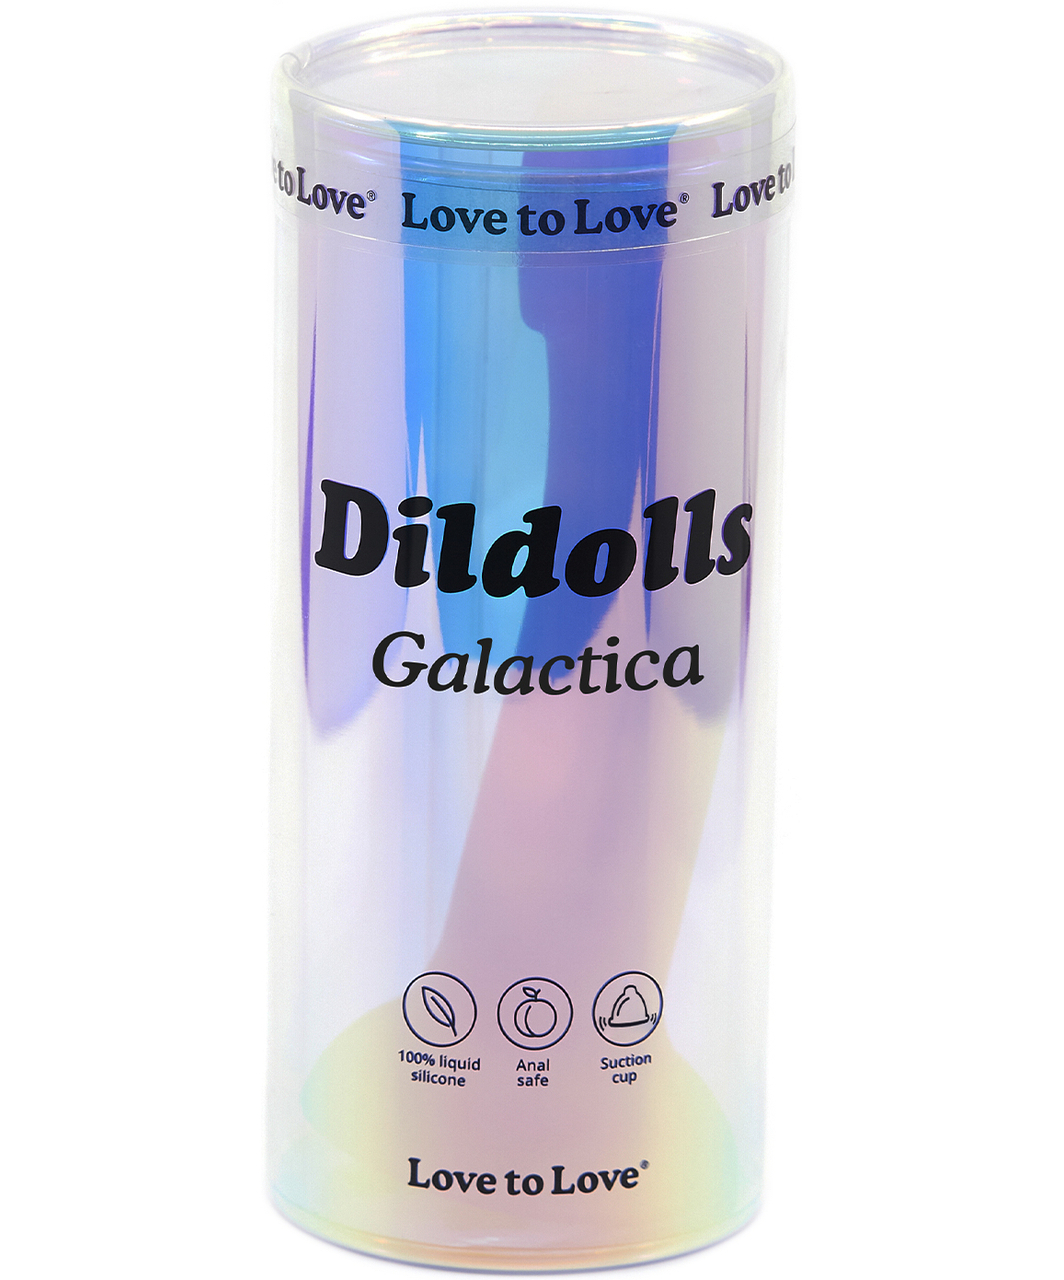 Love to Love Galactica silicone dildo